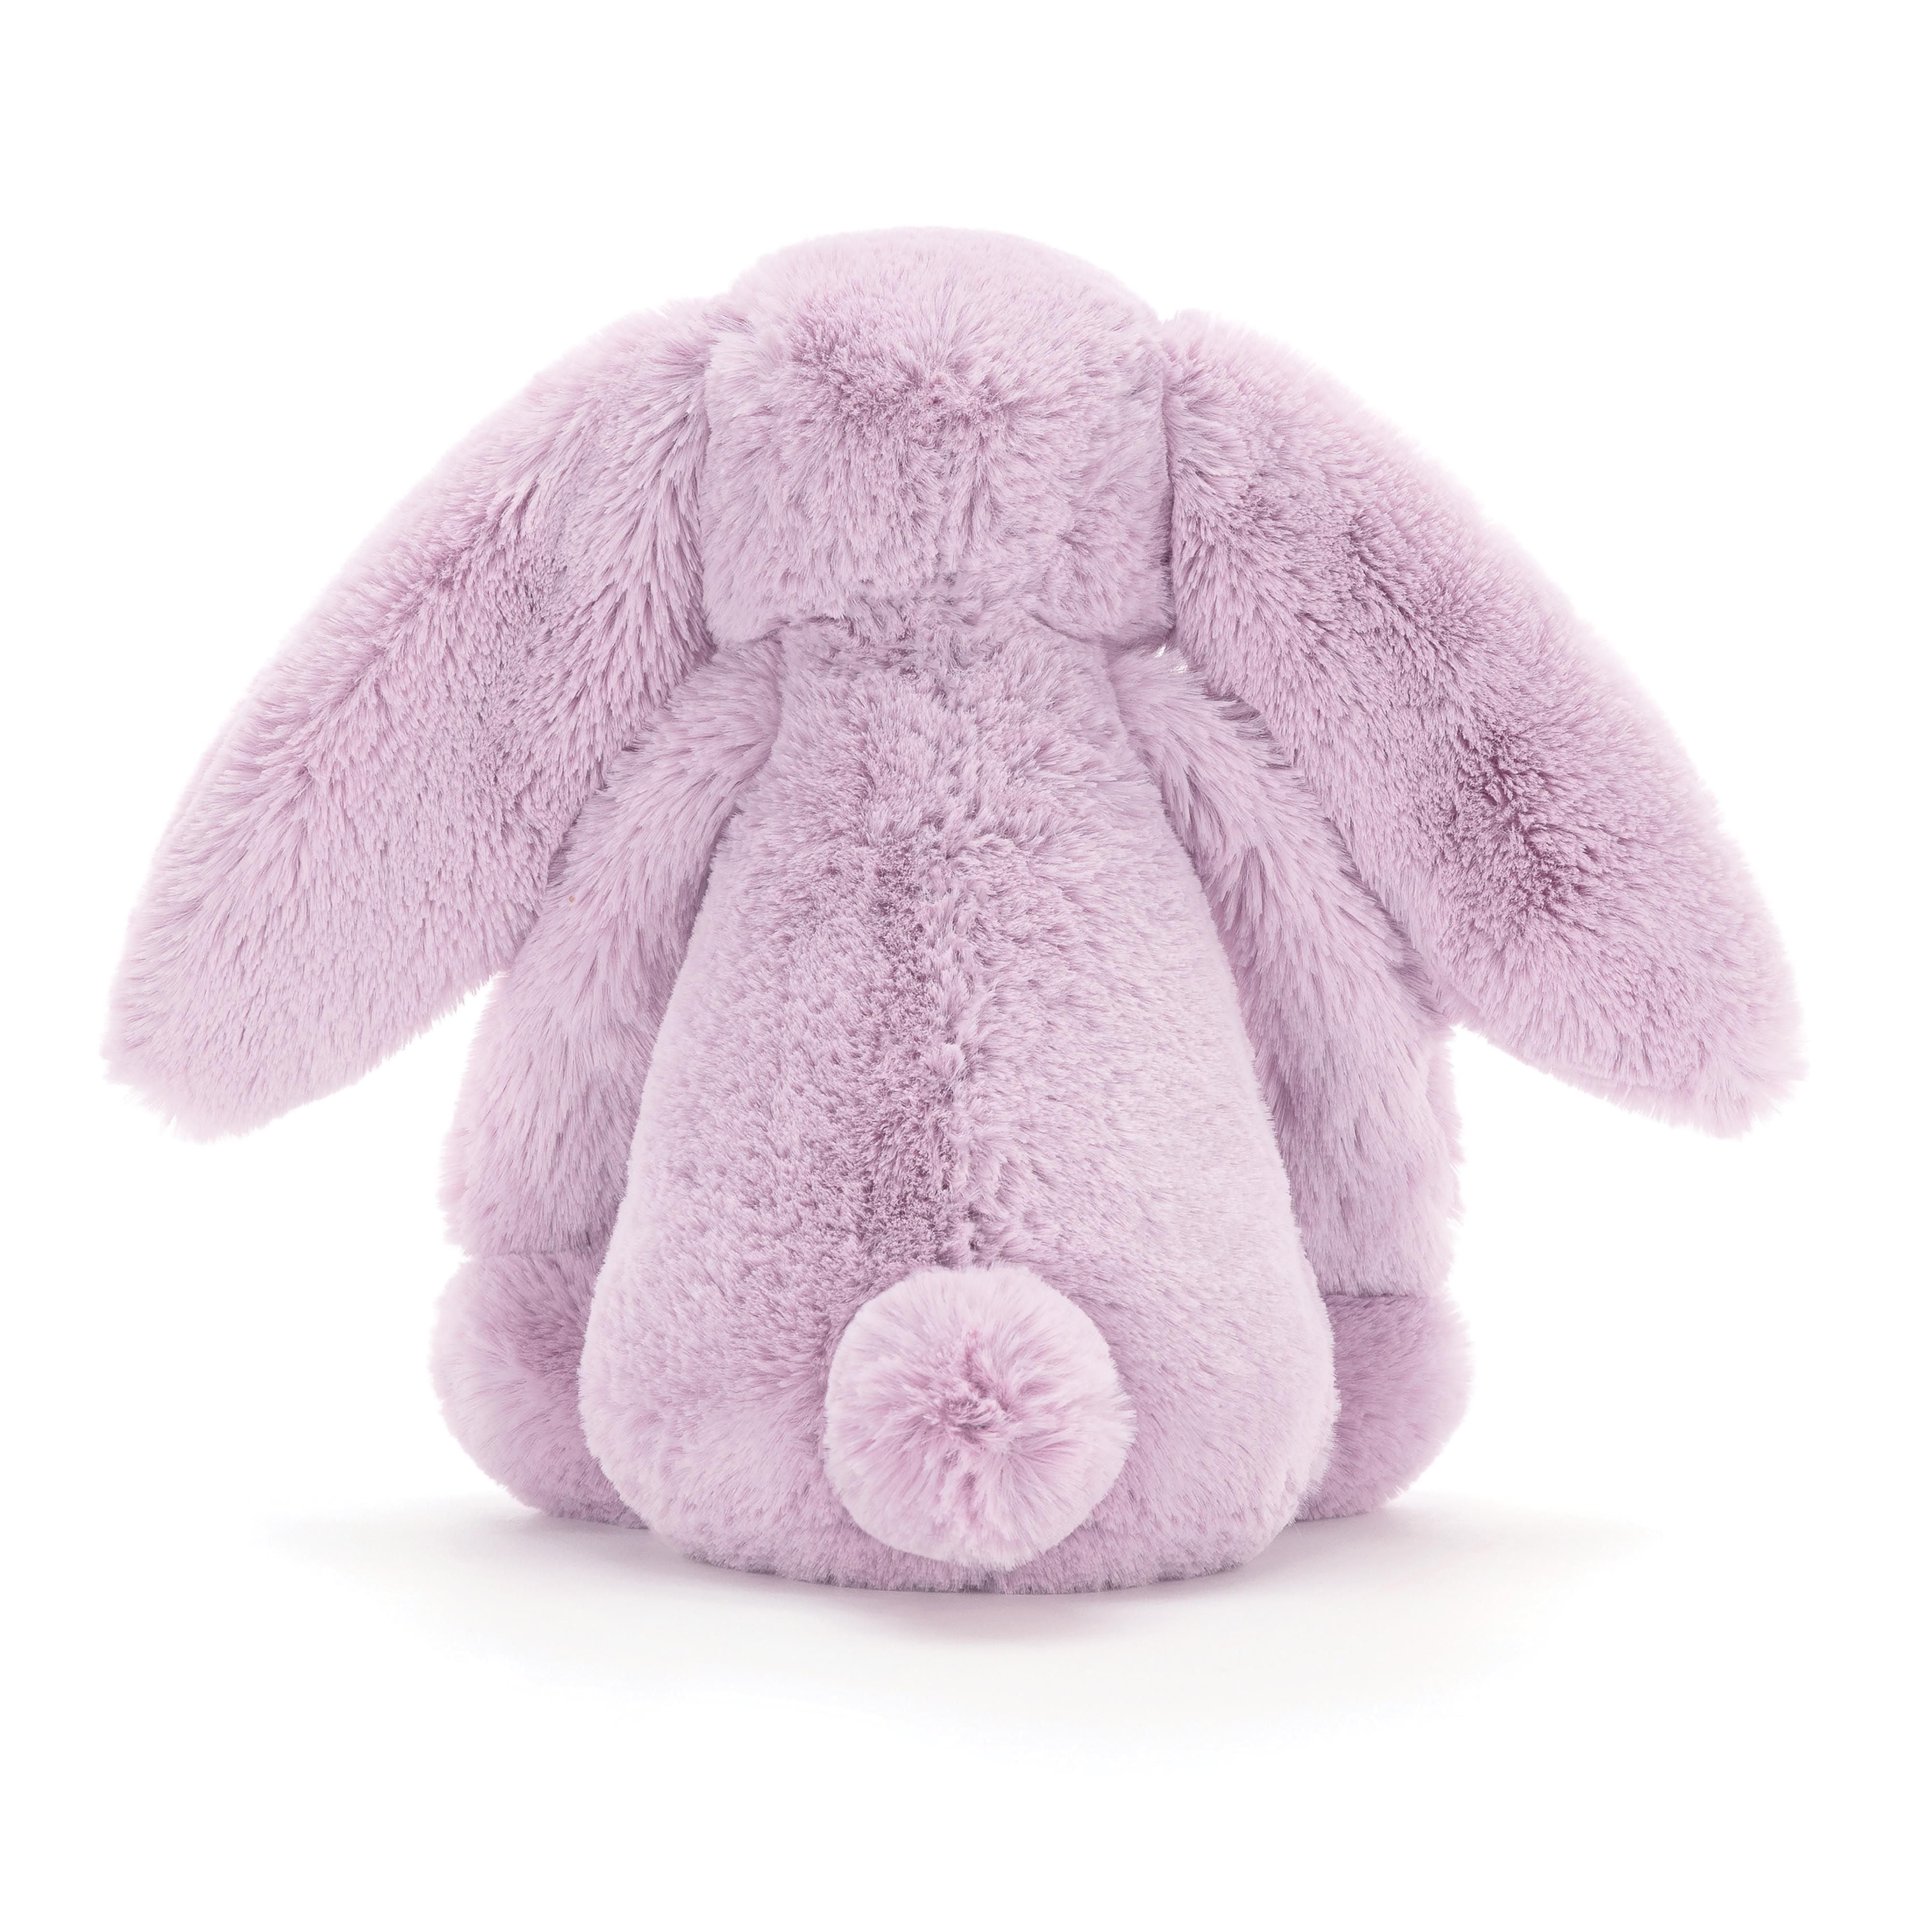 害羞的紫丁香兔子 - 中号